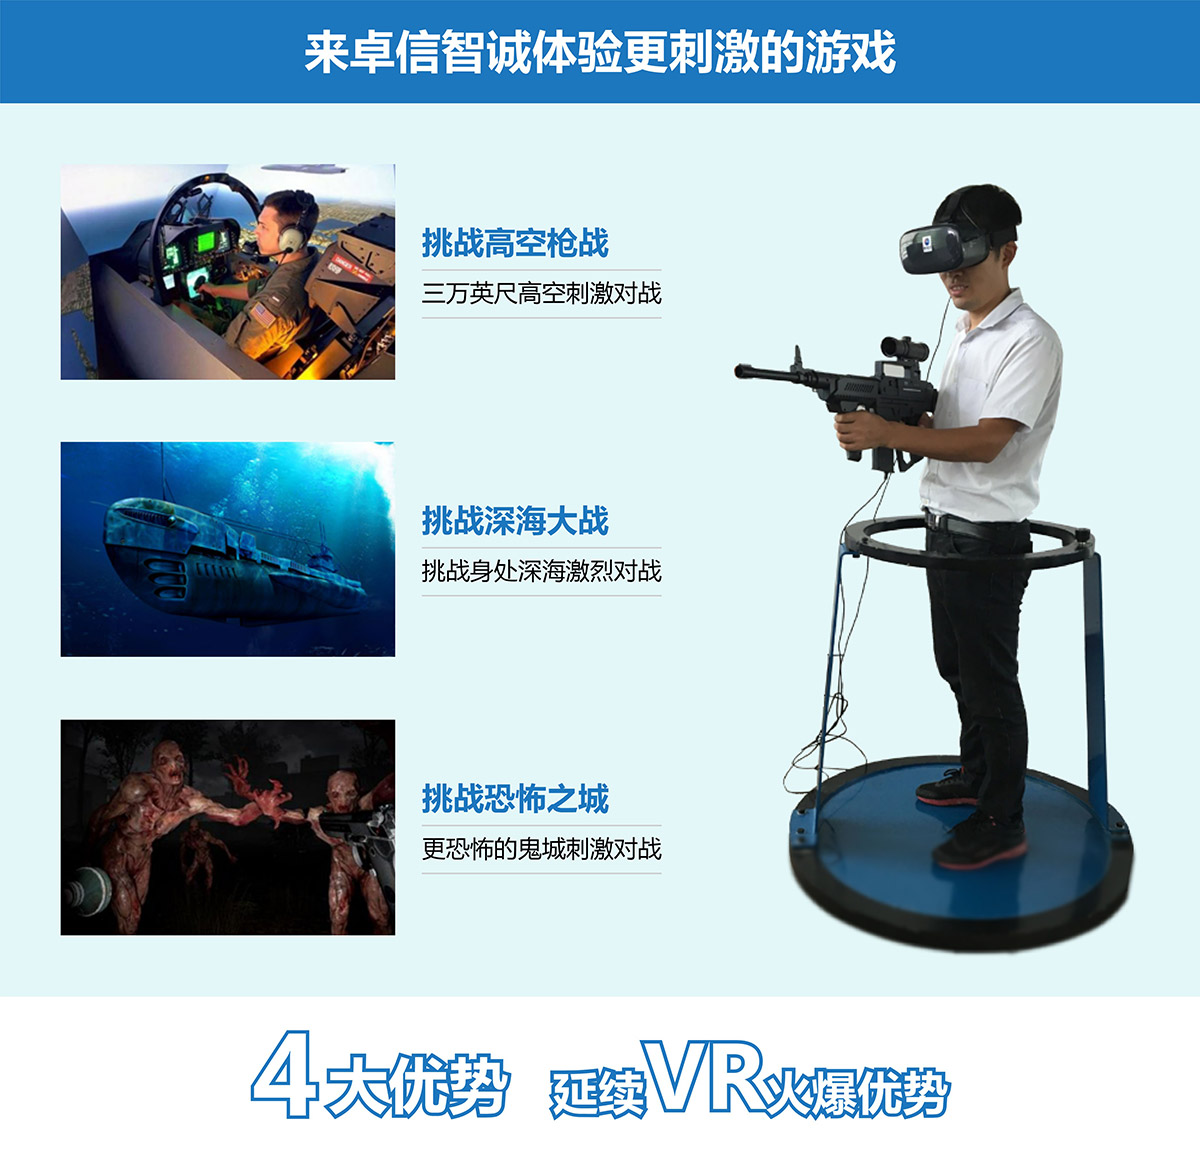 重庆VR对战4大优势延续vr火爆优势.jpg